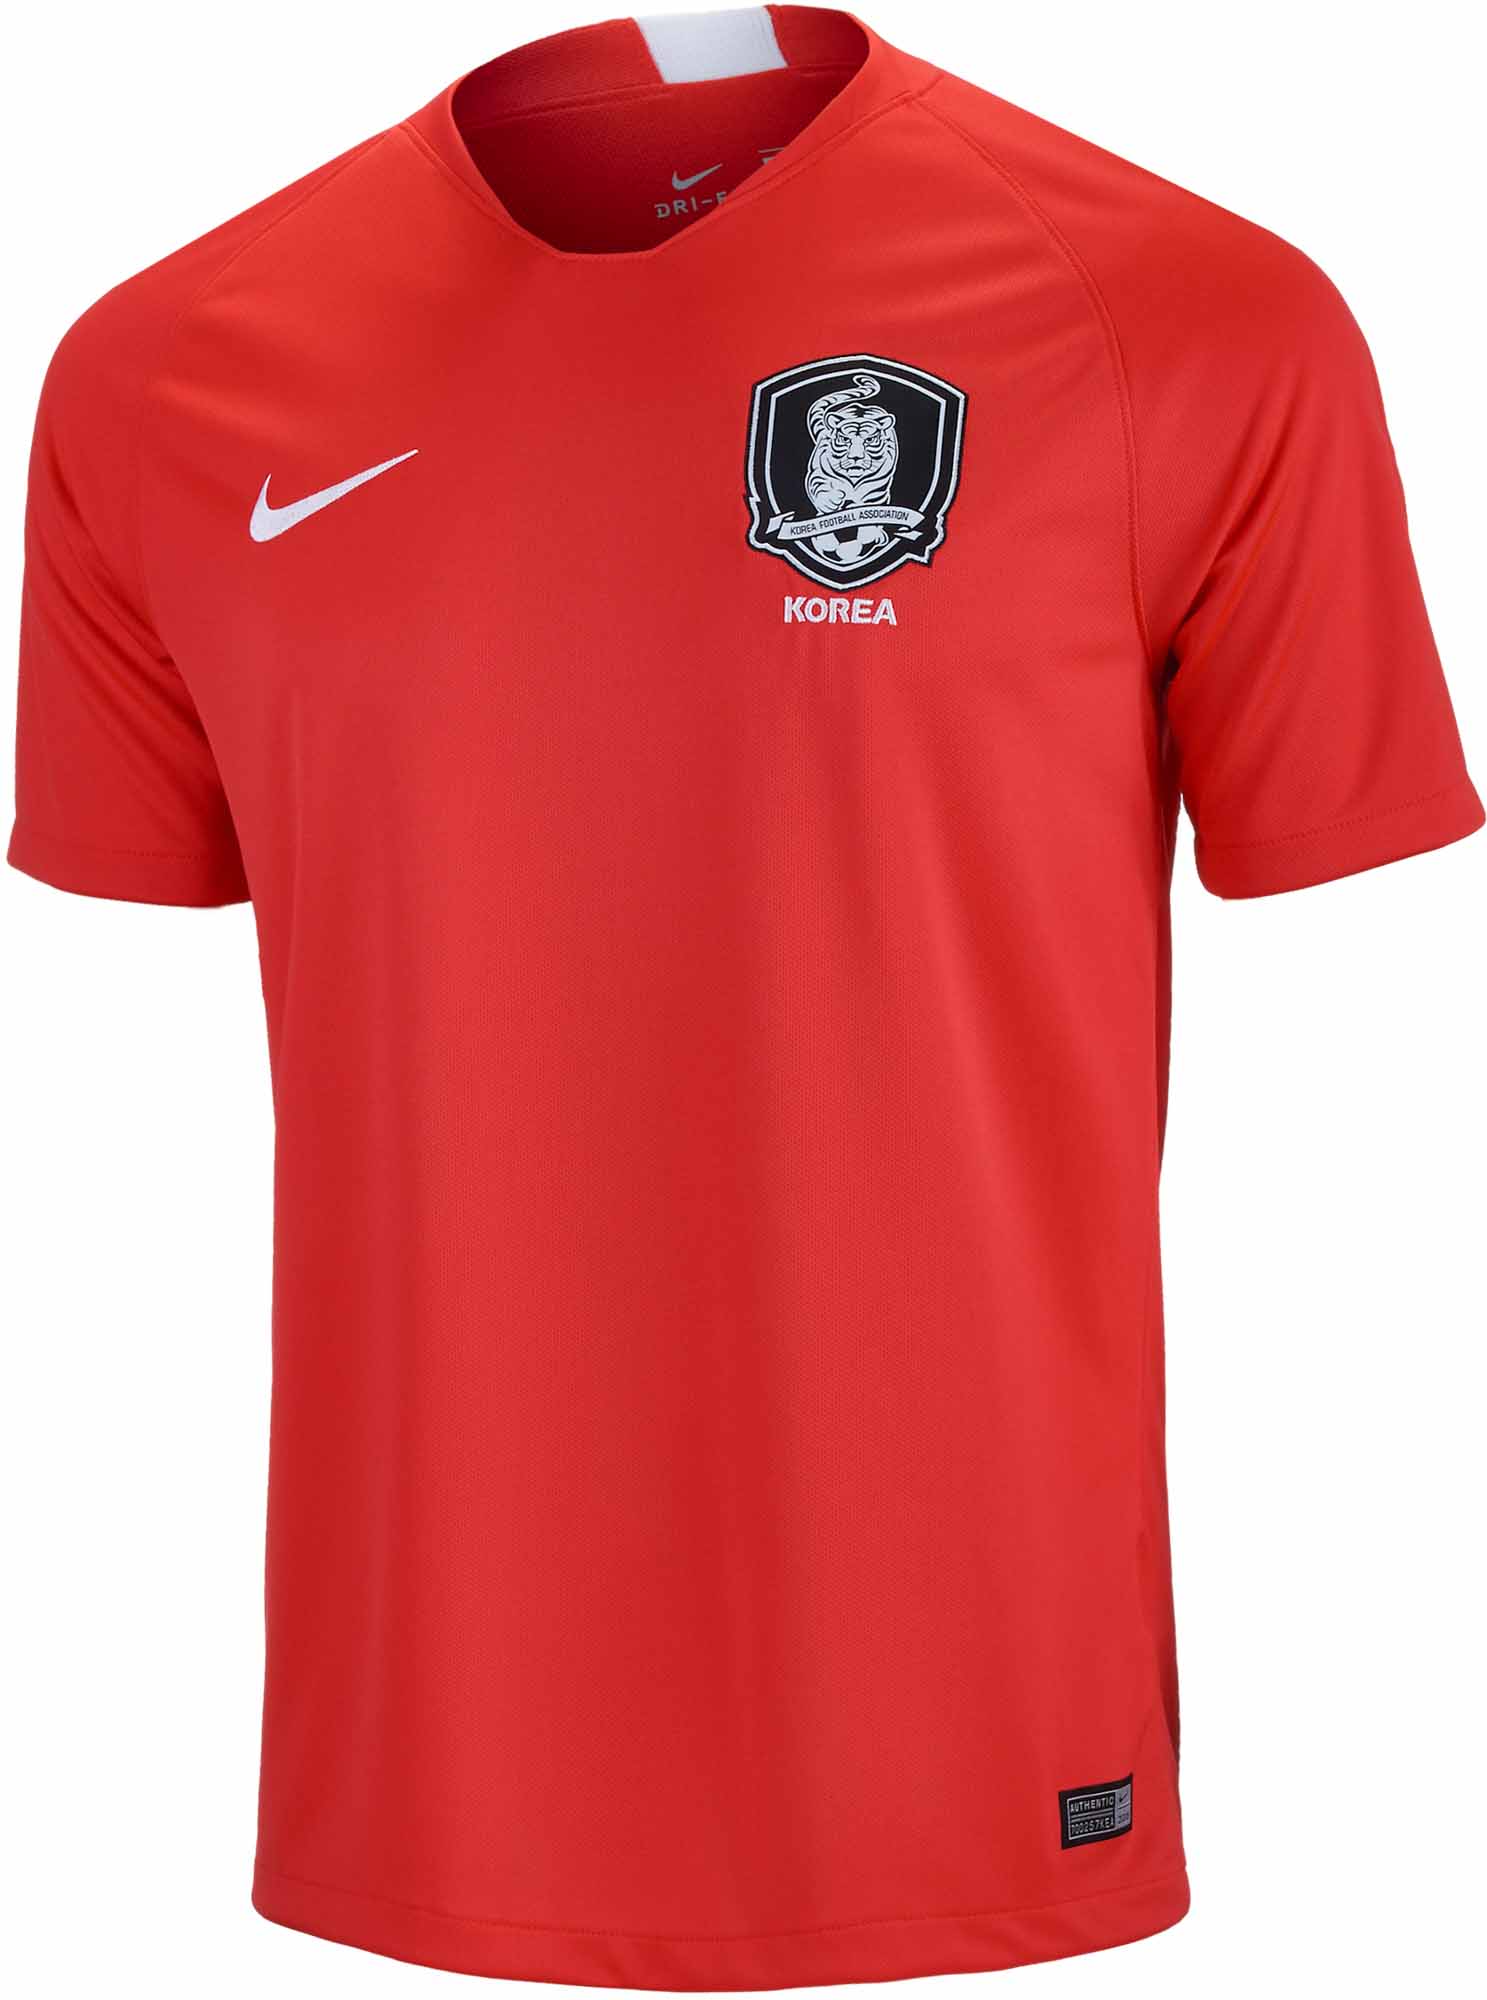 Buy > nike korea soccer jersey > in stock